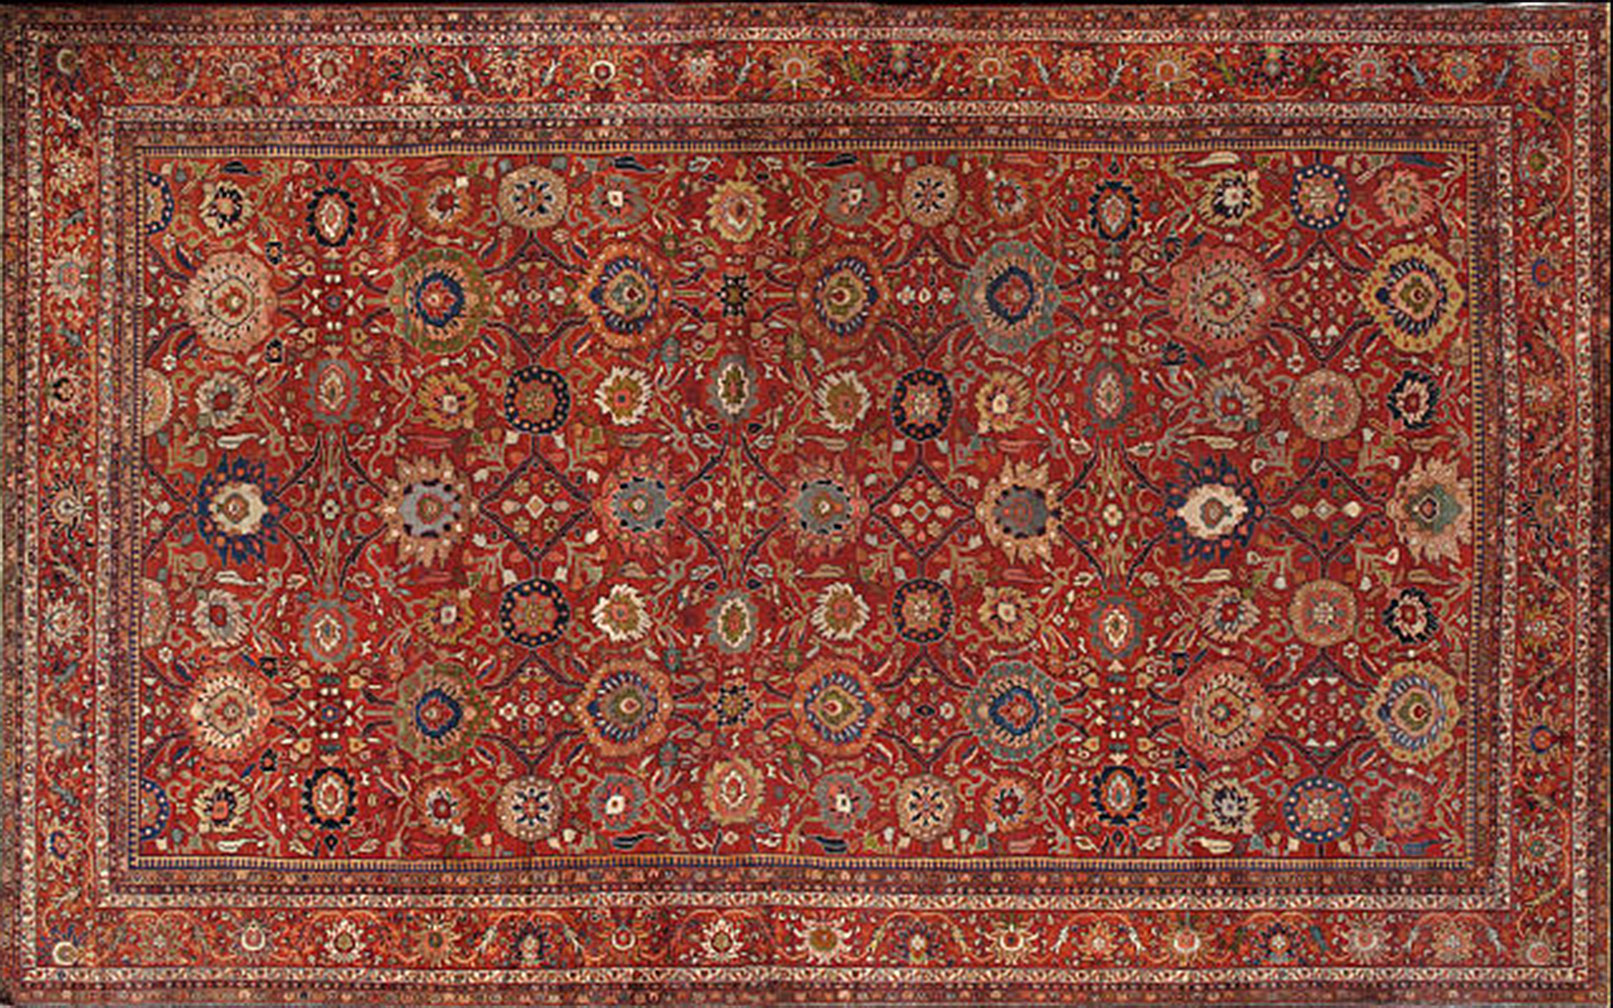 Antique sultan abad Carpet - # 52630